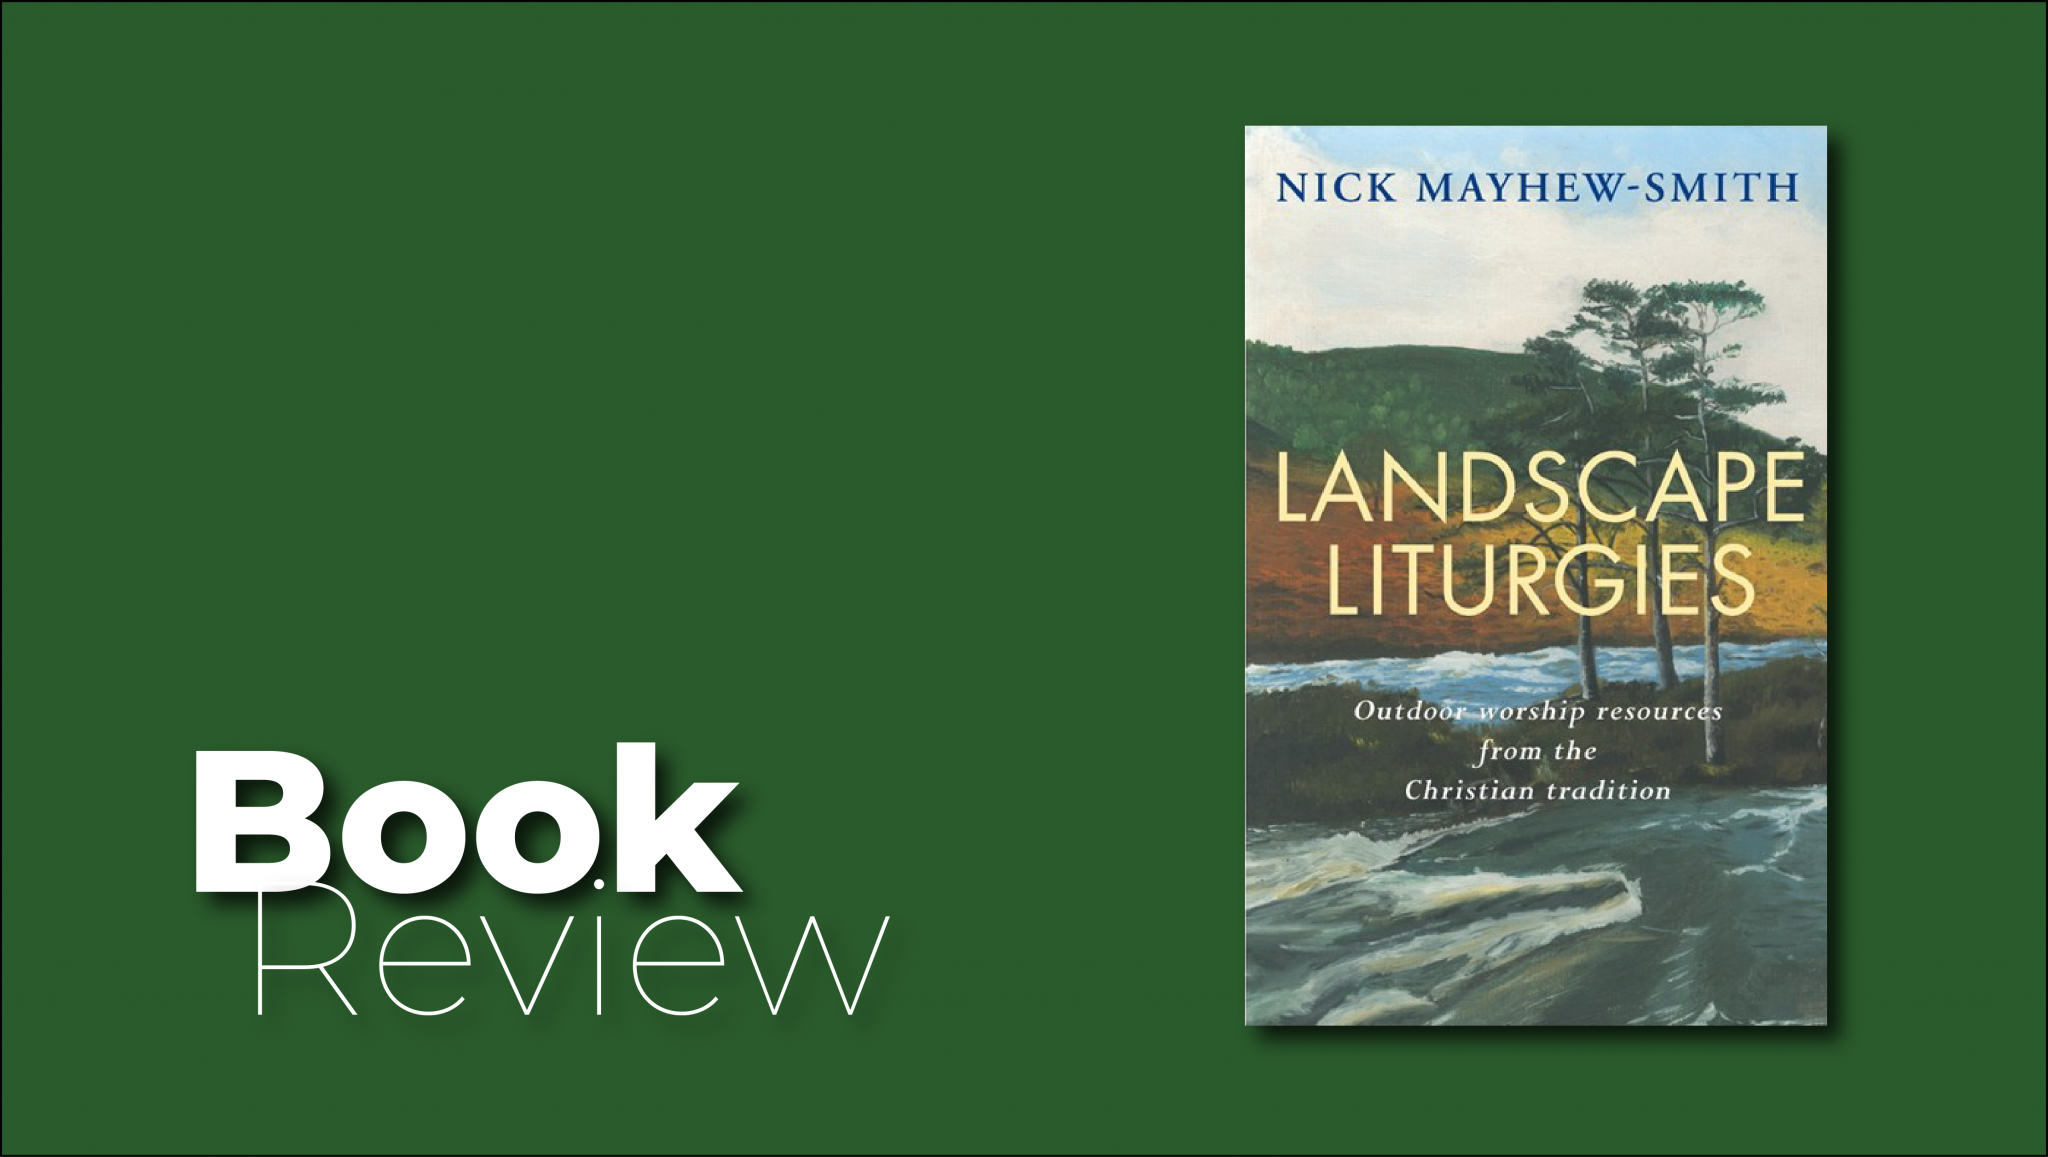 Book Review: Landscape Liturgies